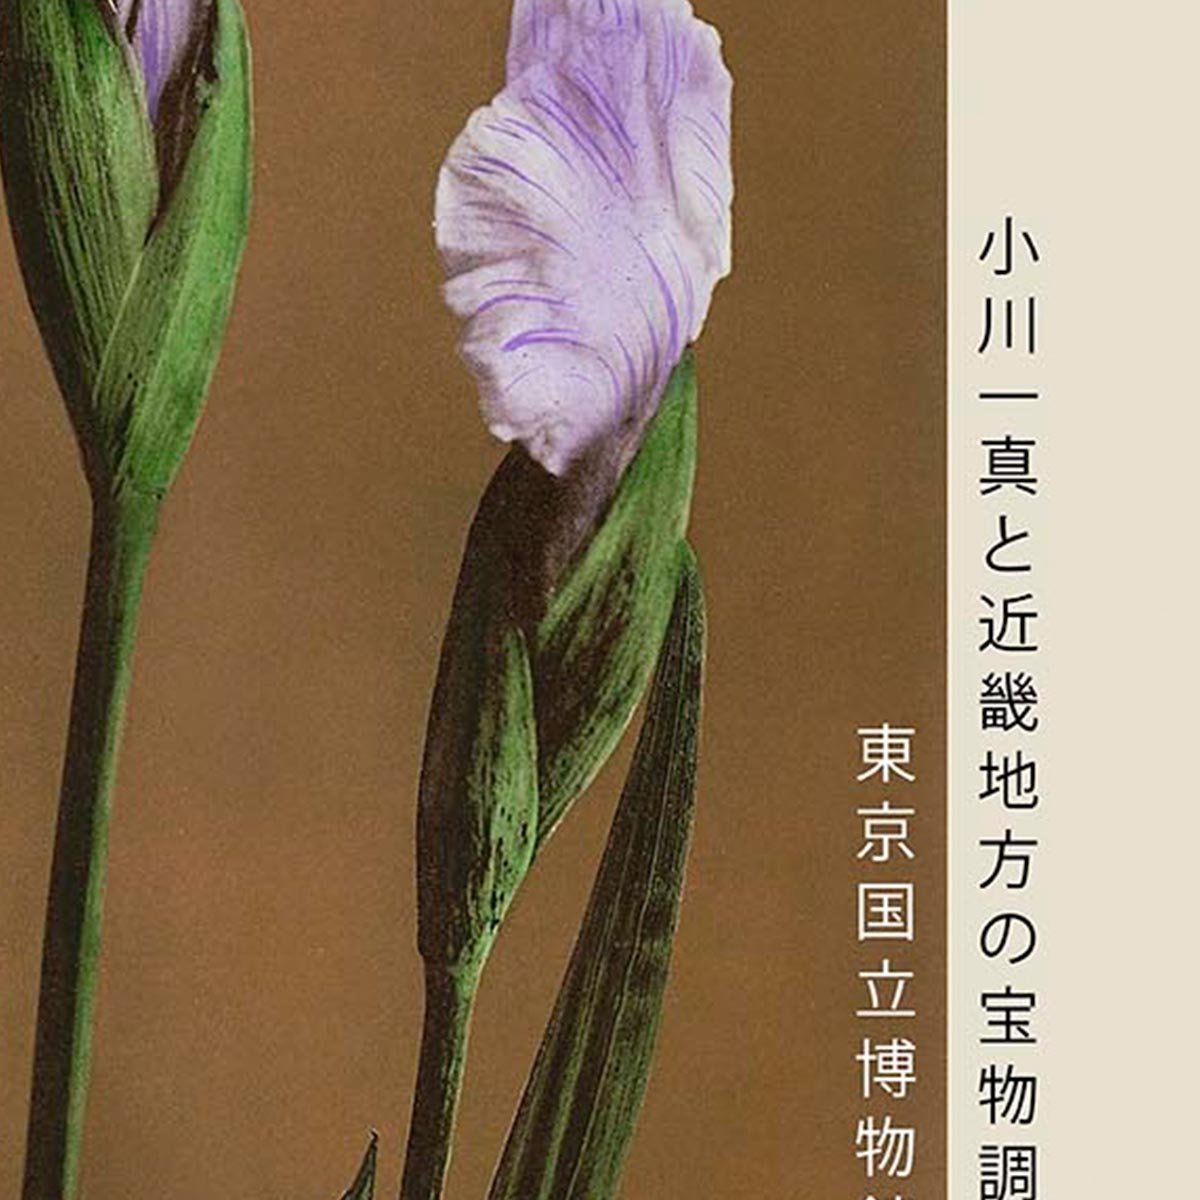 Three Iris Kæmpferi by Kazumasa Exhibition Poster